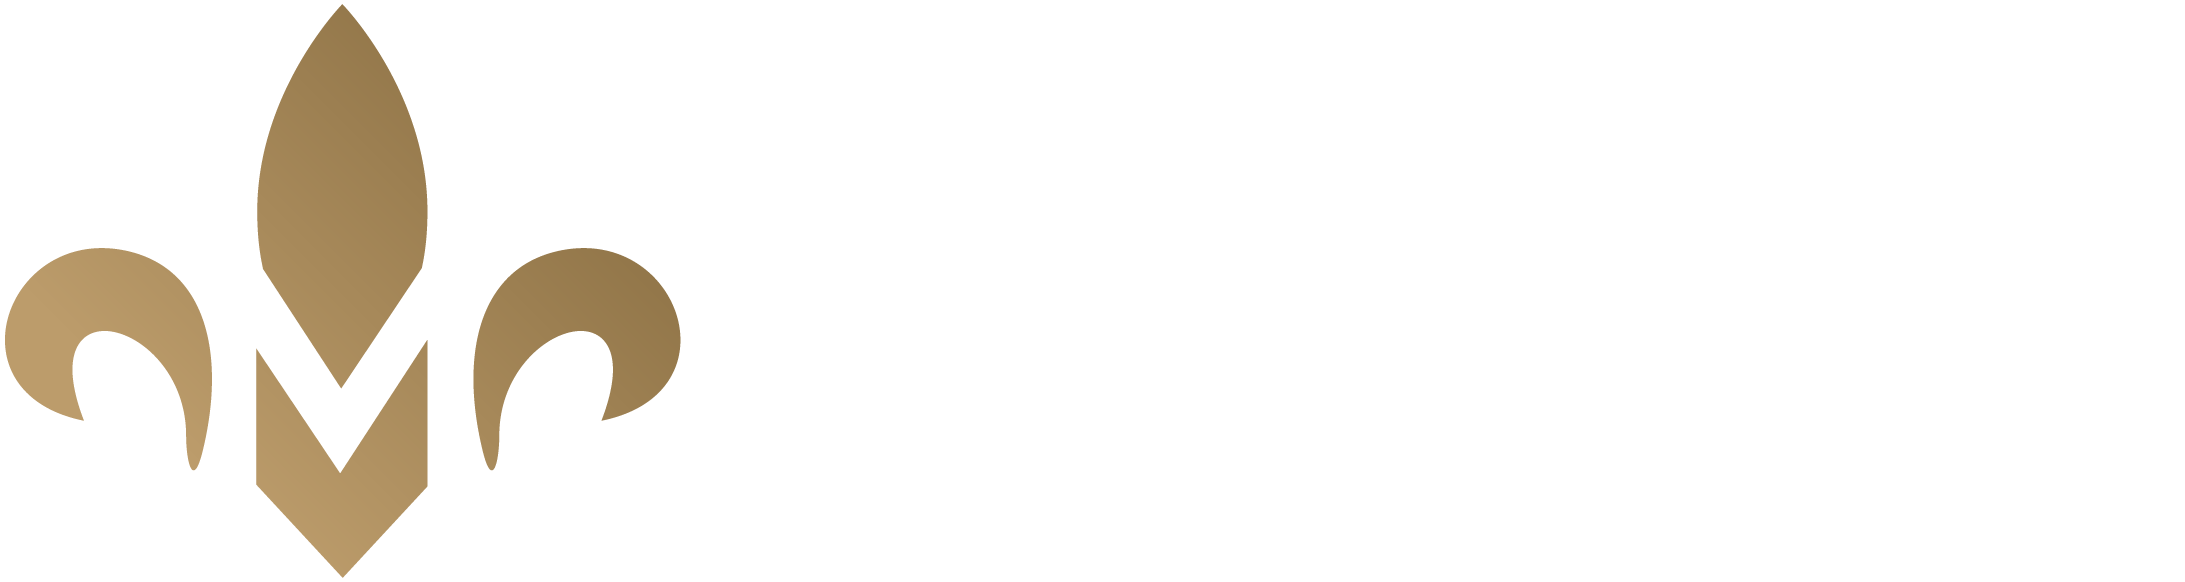 Logo Traiteur Michel